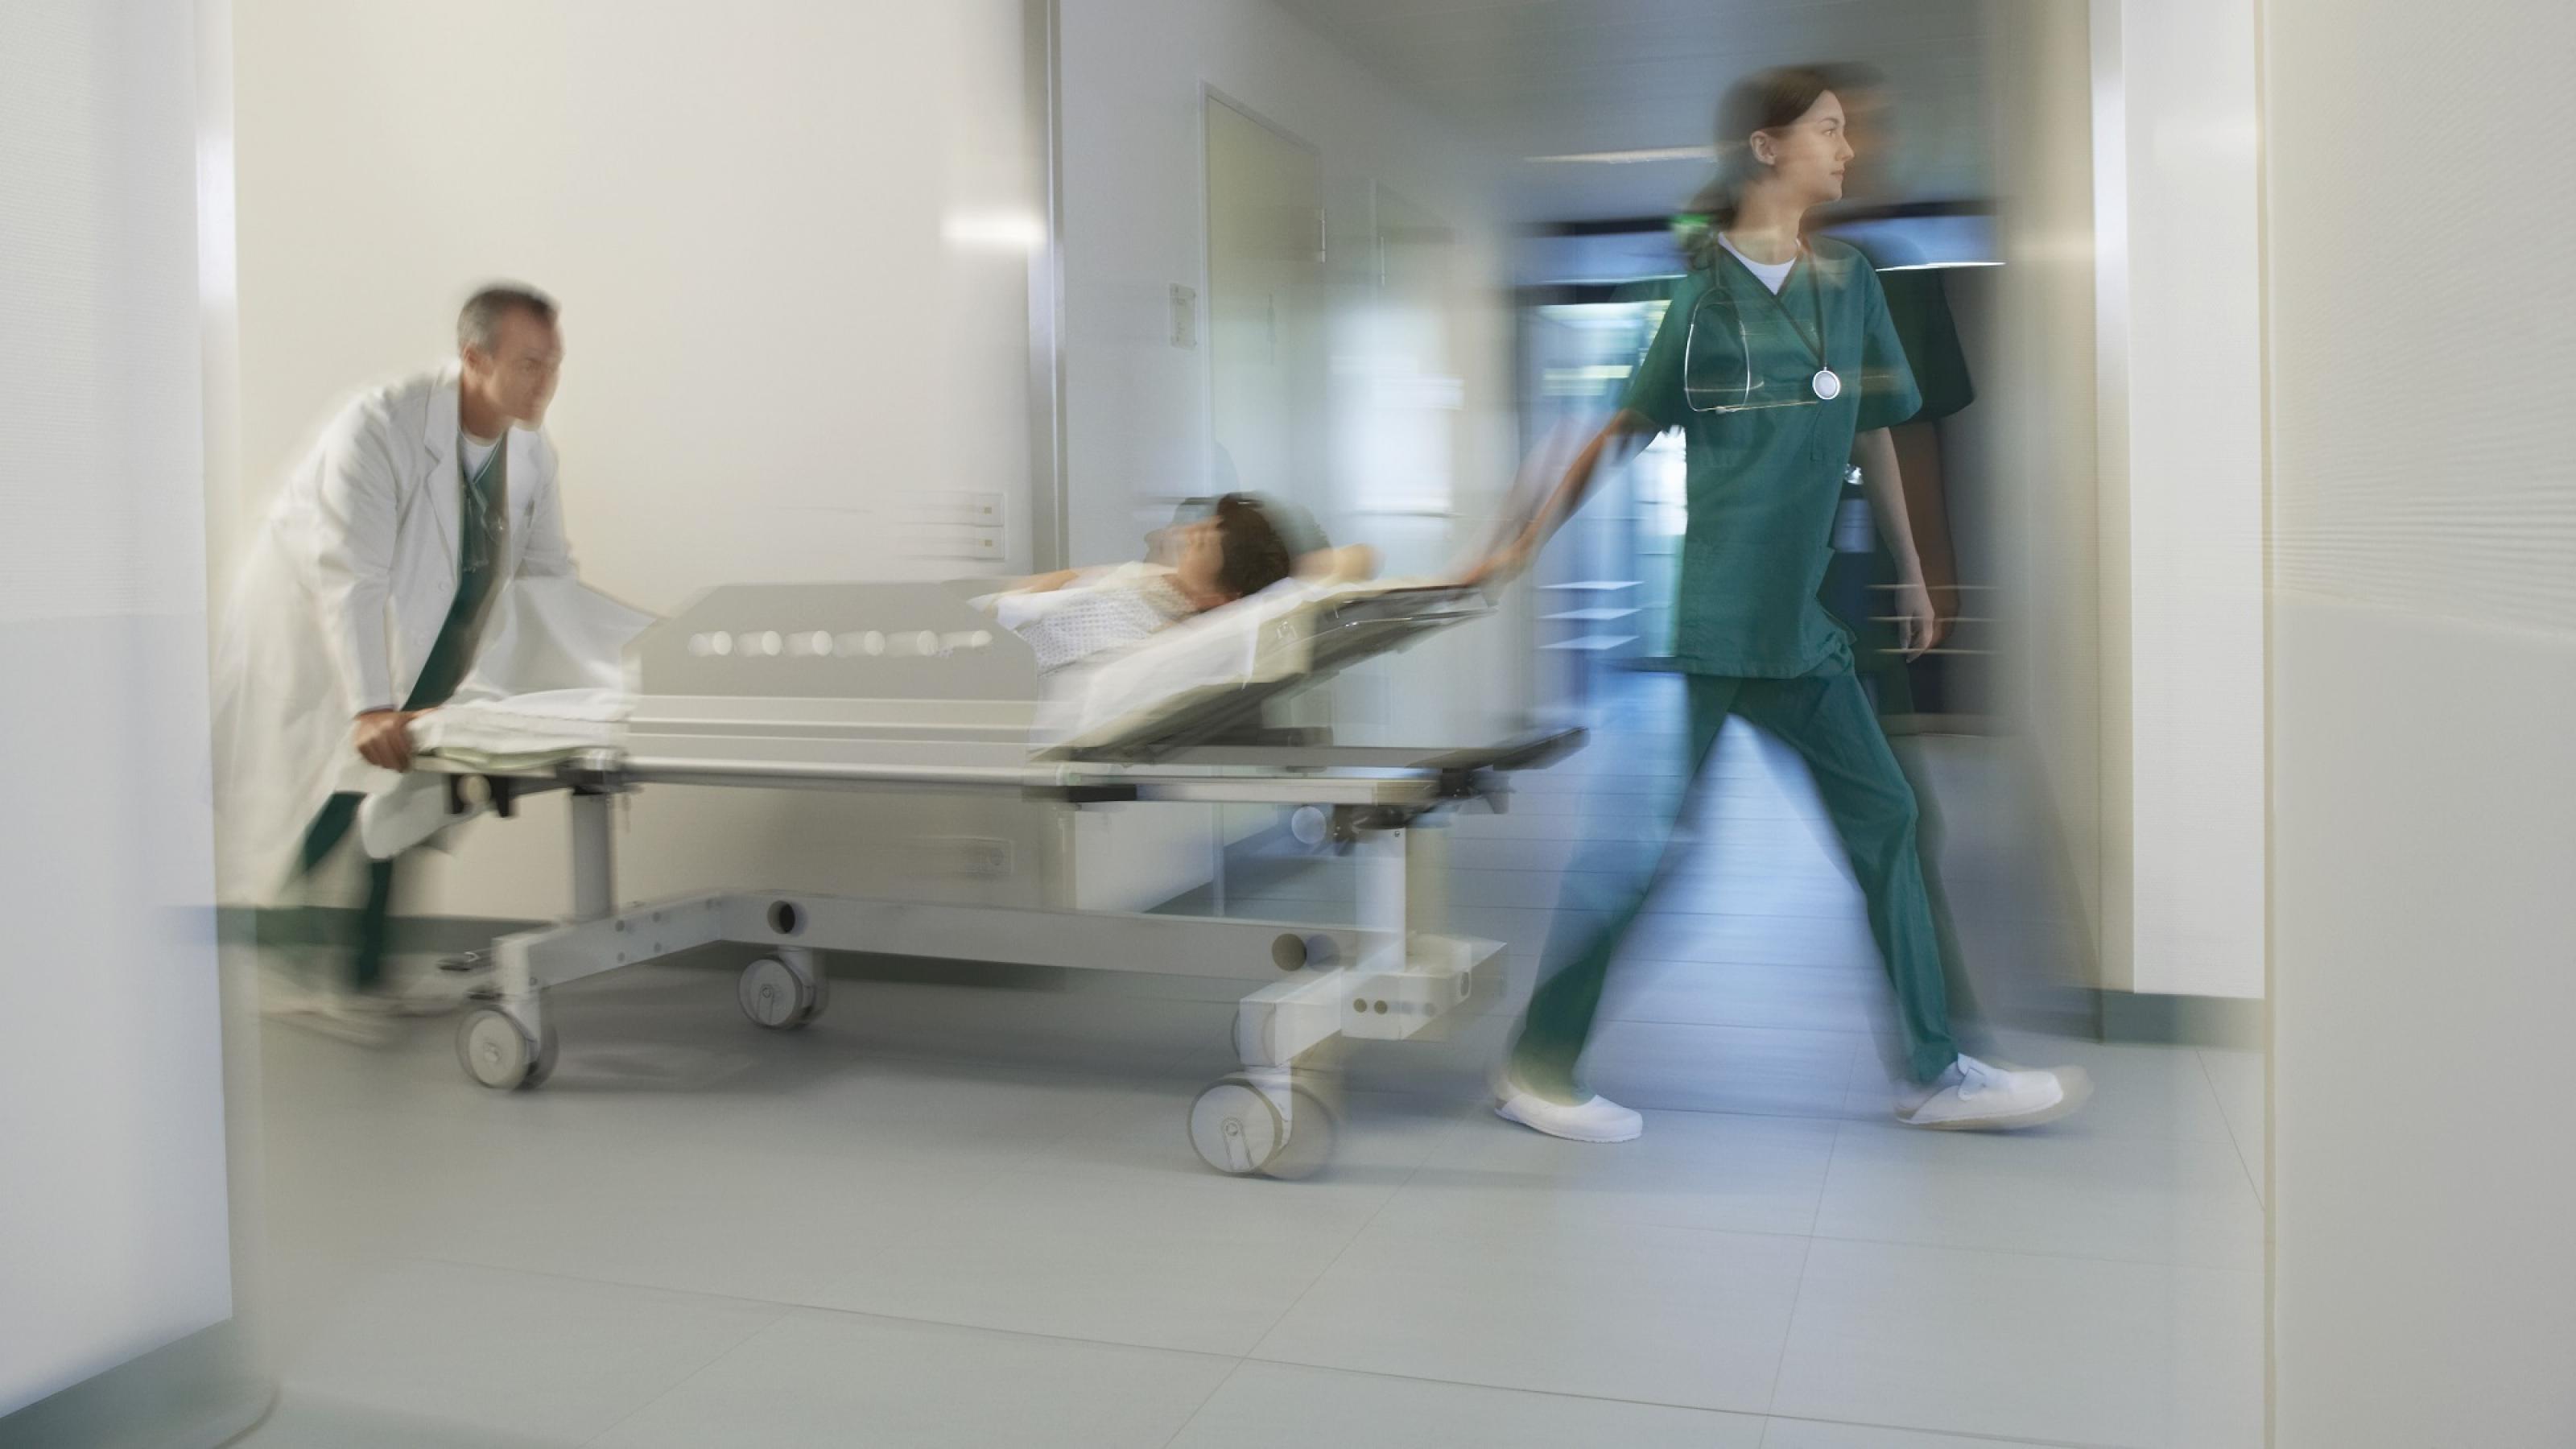 Ein Krankenpfleger schiebt einen Notfall-Patienten durch einen Krankenhausflur. Eine Pflegerein lenkt vorne. Sie haben es eilig.